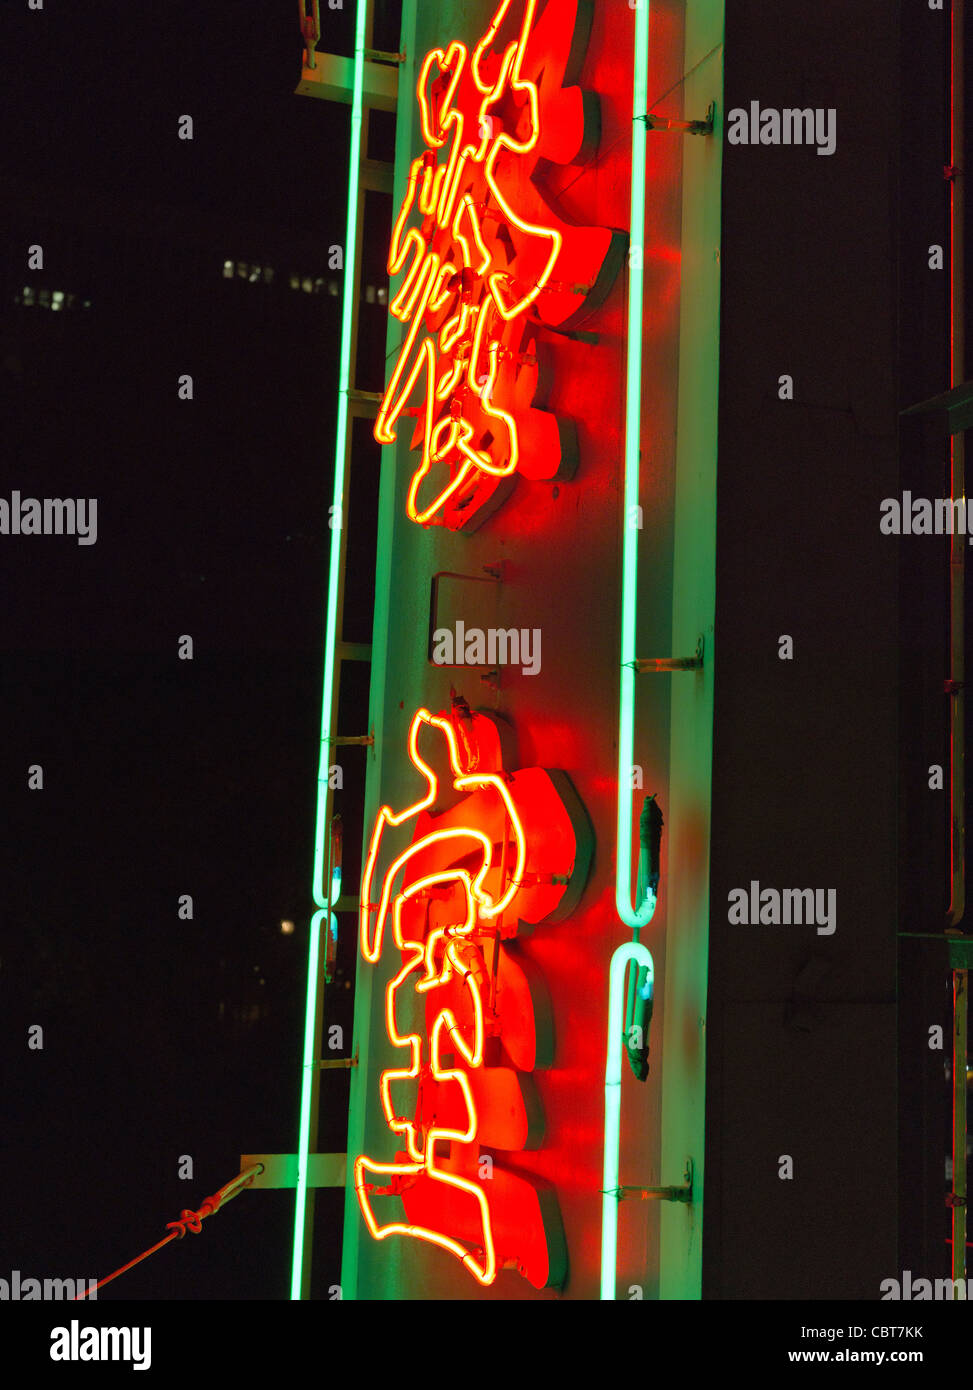 dh NUIT HONG KONG Rouge Calligraphie néon lumière chinoise signes signalisation lettre restaurant chine Banque D'Images